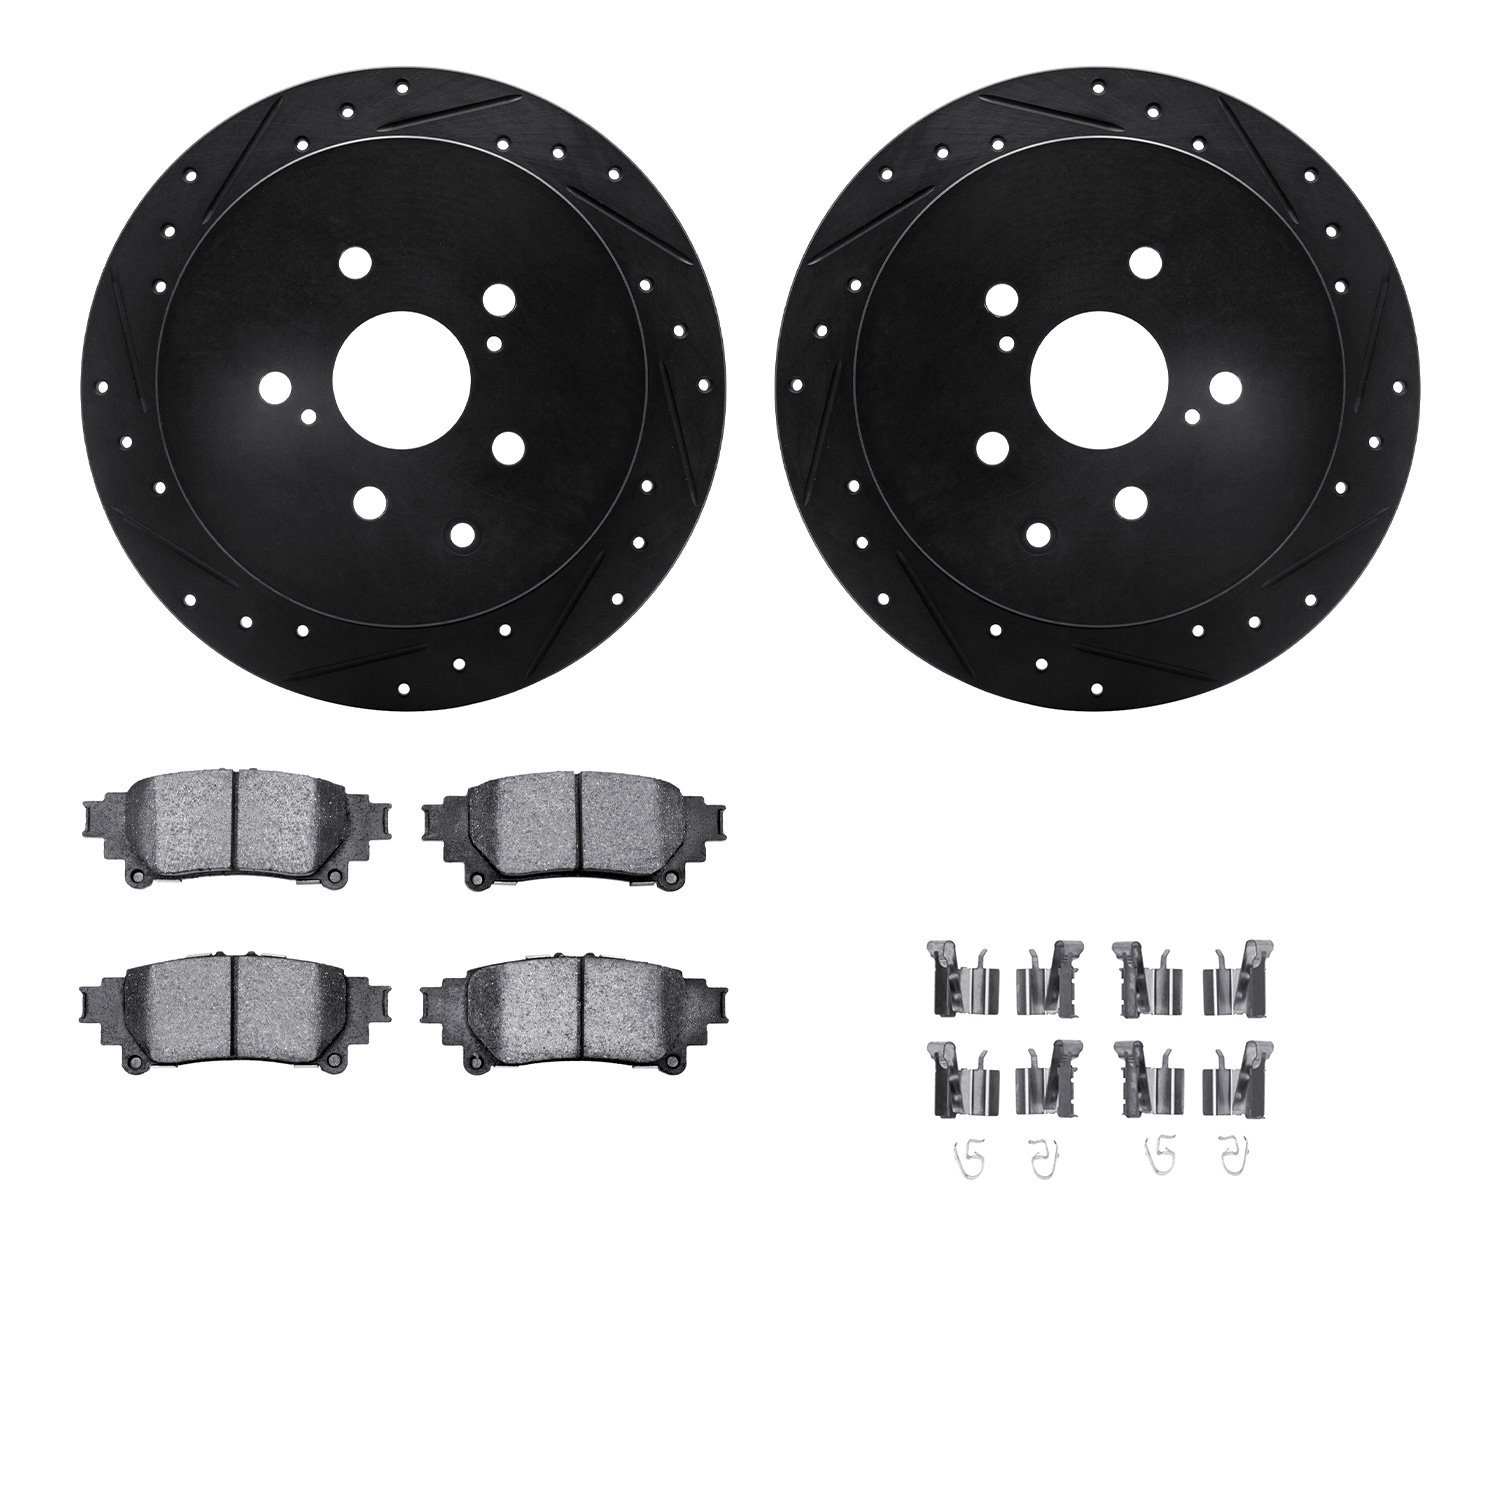 8312-76167 Drilled/Slotted Brake Rotors with 3000-Series Ceramic Brake Pads Kit & Hardware [Black], 2010-2020 Lexus/Toyota/Scion